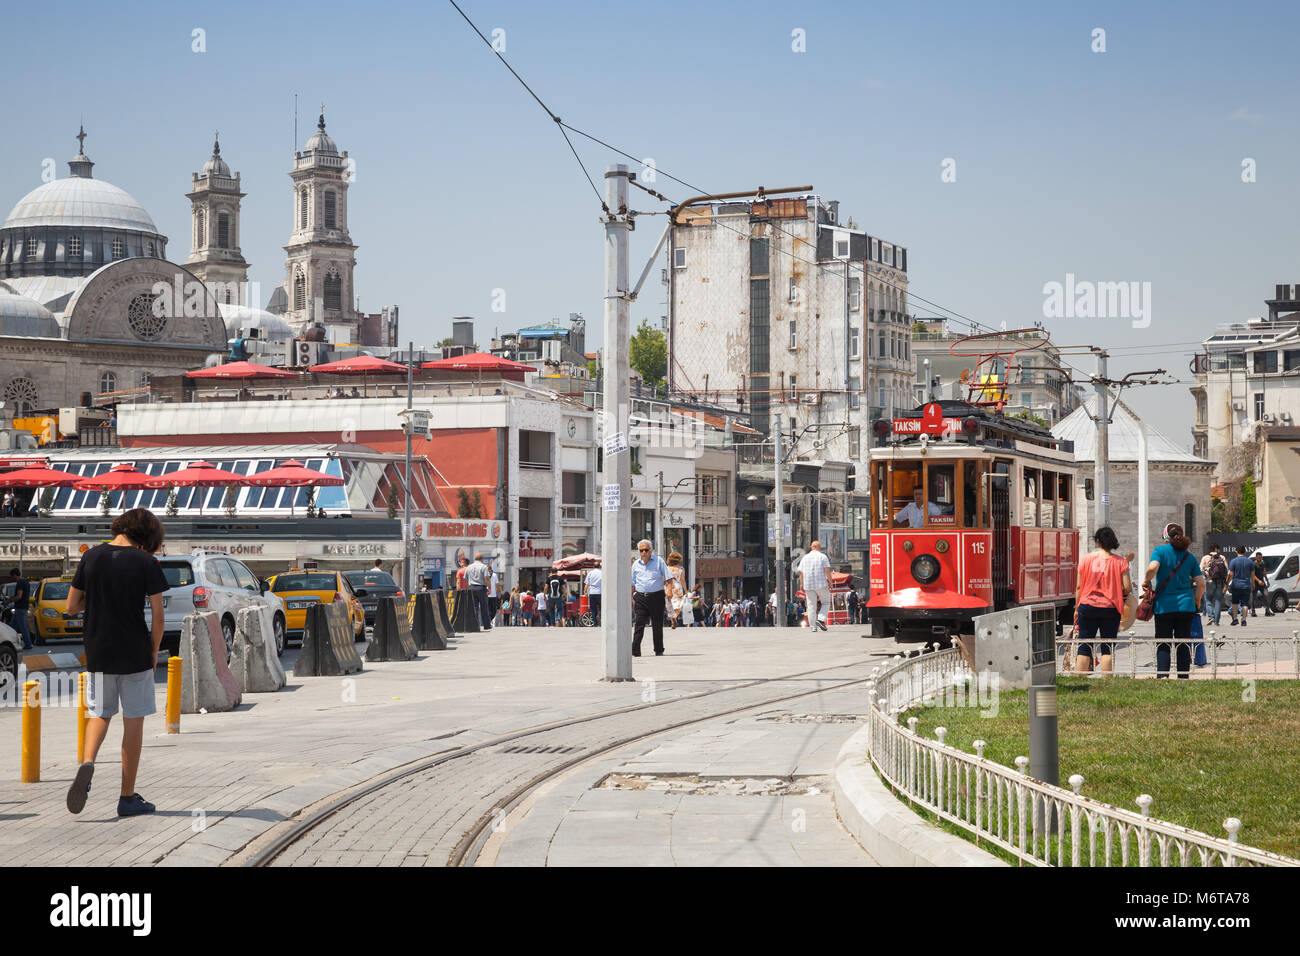 Istanbul, Türkei - 1. Juli 2016: traditionellen roten Tram fährt am Taksim-Platz in Istanbul, populäre öffentliche und touristischen Verkehr. Gewöhnliche Menschen vor Ort Stockfoto